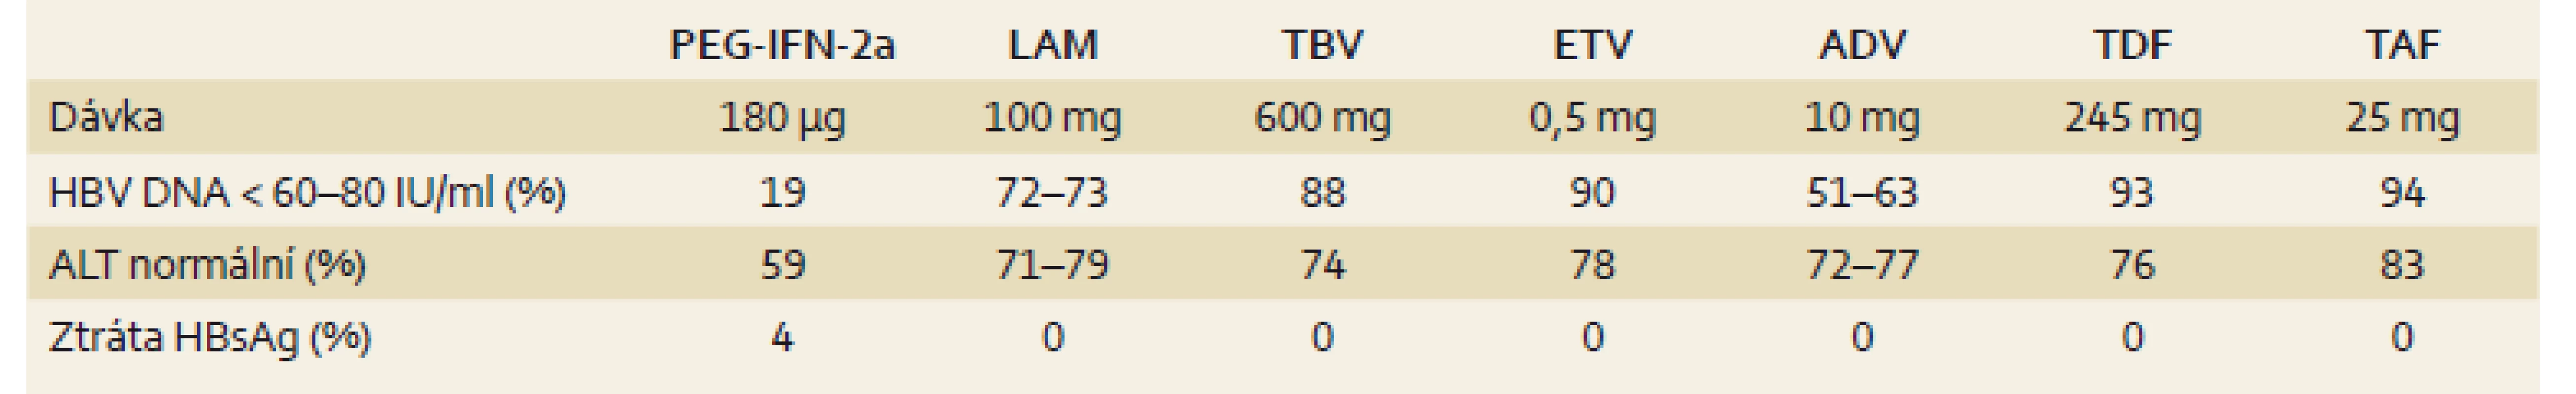 Výsledky léčby HBeAg negativních pacientů (u PEG-IFN 6 měsíců po 48 týdnech léčby, u NA po 48 nebo 52 týdnech dosud probíhající léčby) [3].
Tab. 2. Results of treatment of HBeAg-negative patients (PEG-IFN 6 months after 48 weeks of treatment, nucleotide analogues after 48 or 52 weeks of treatment) [3].